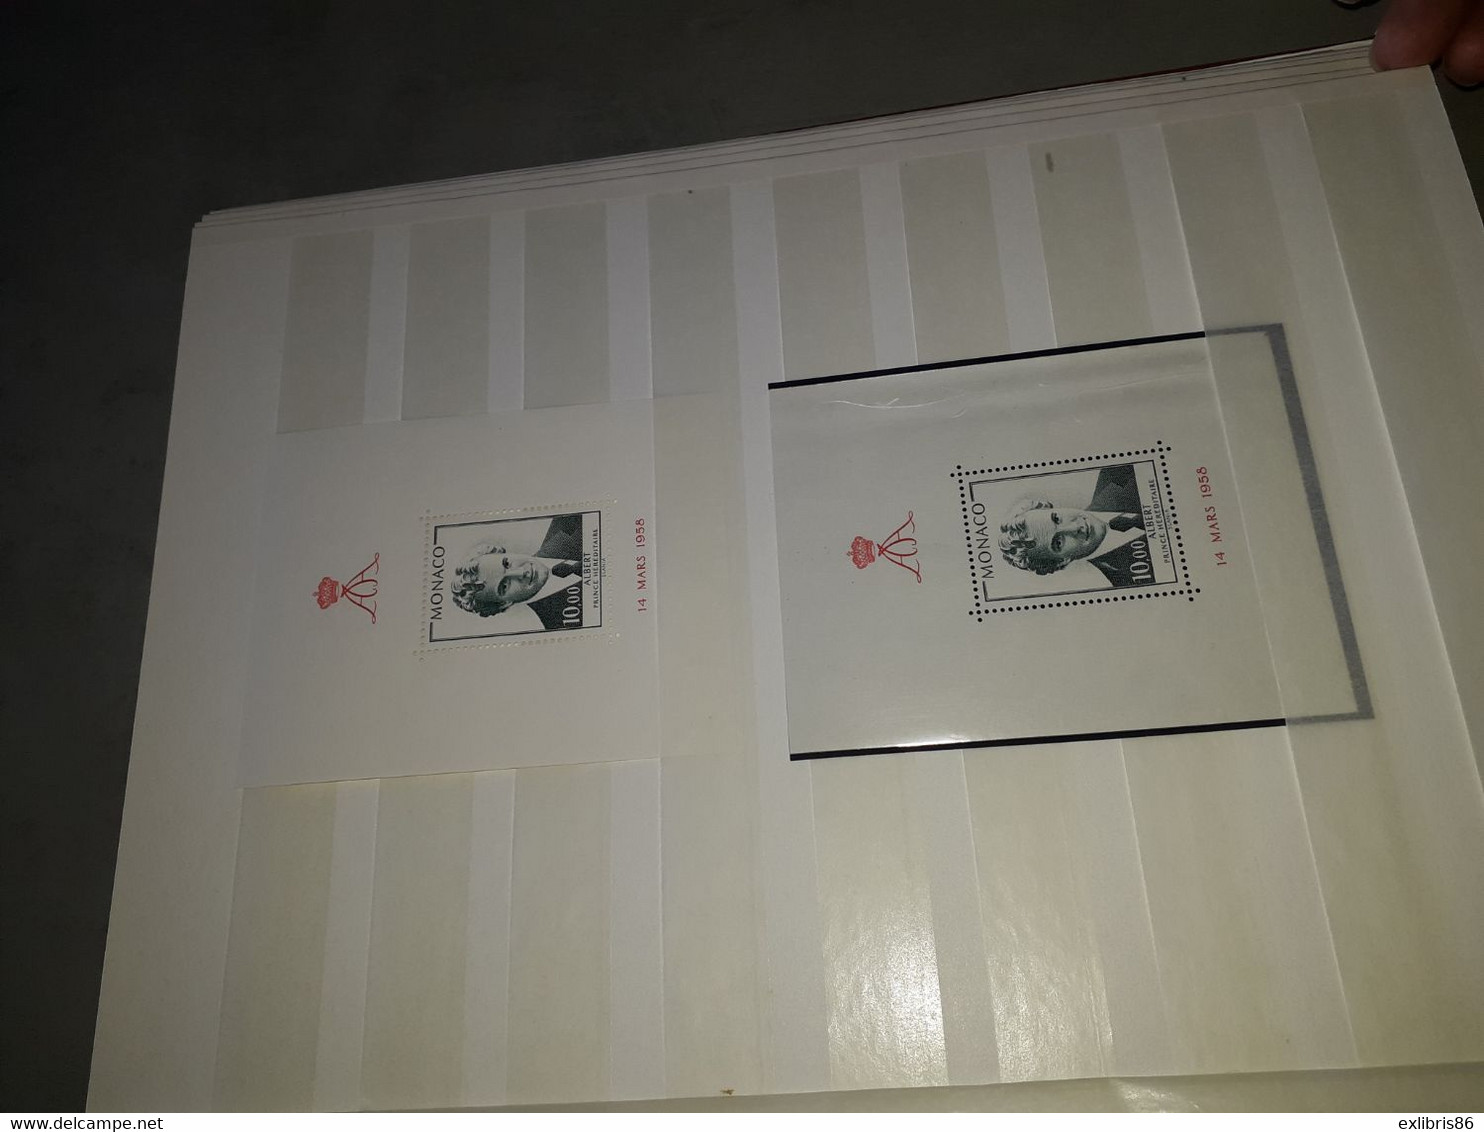 260322// ENORME COLLECTION MONACO TRES GROSSE COTE ( 1 timbre cote + 1000€) fragment feuille de classiques